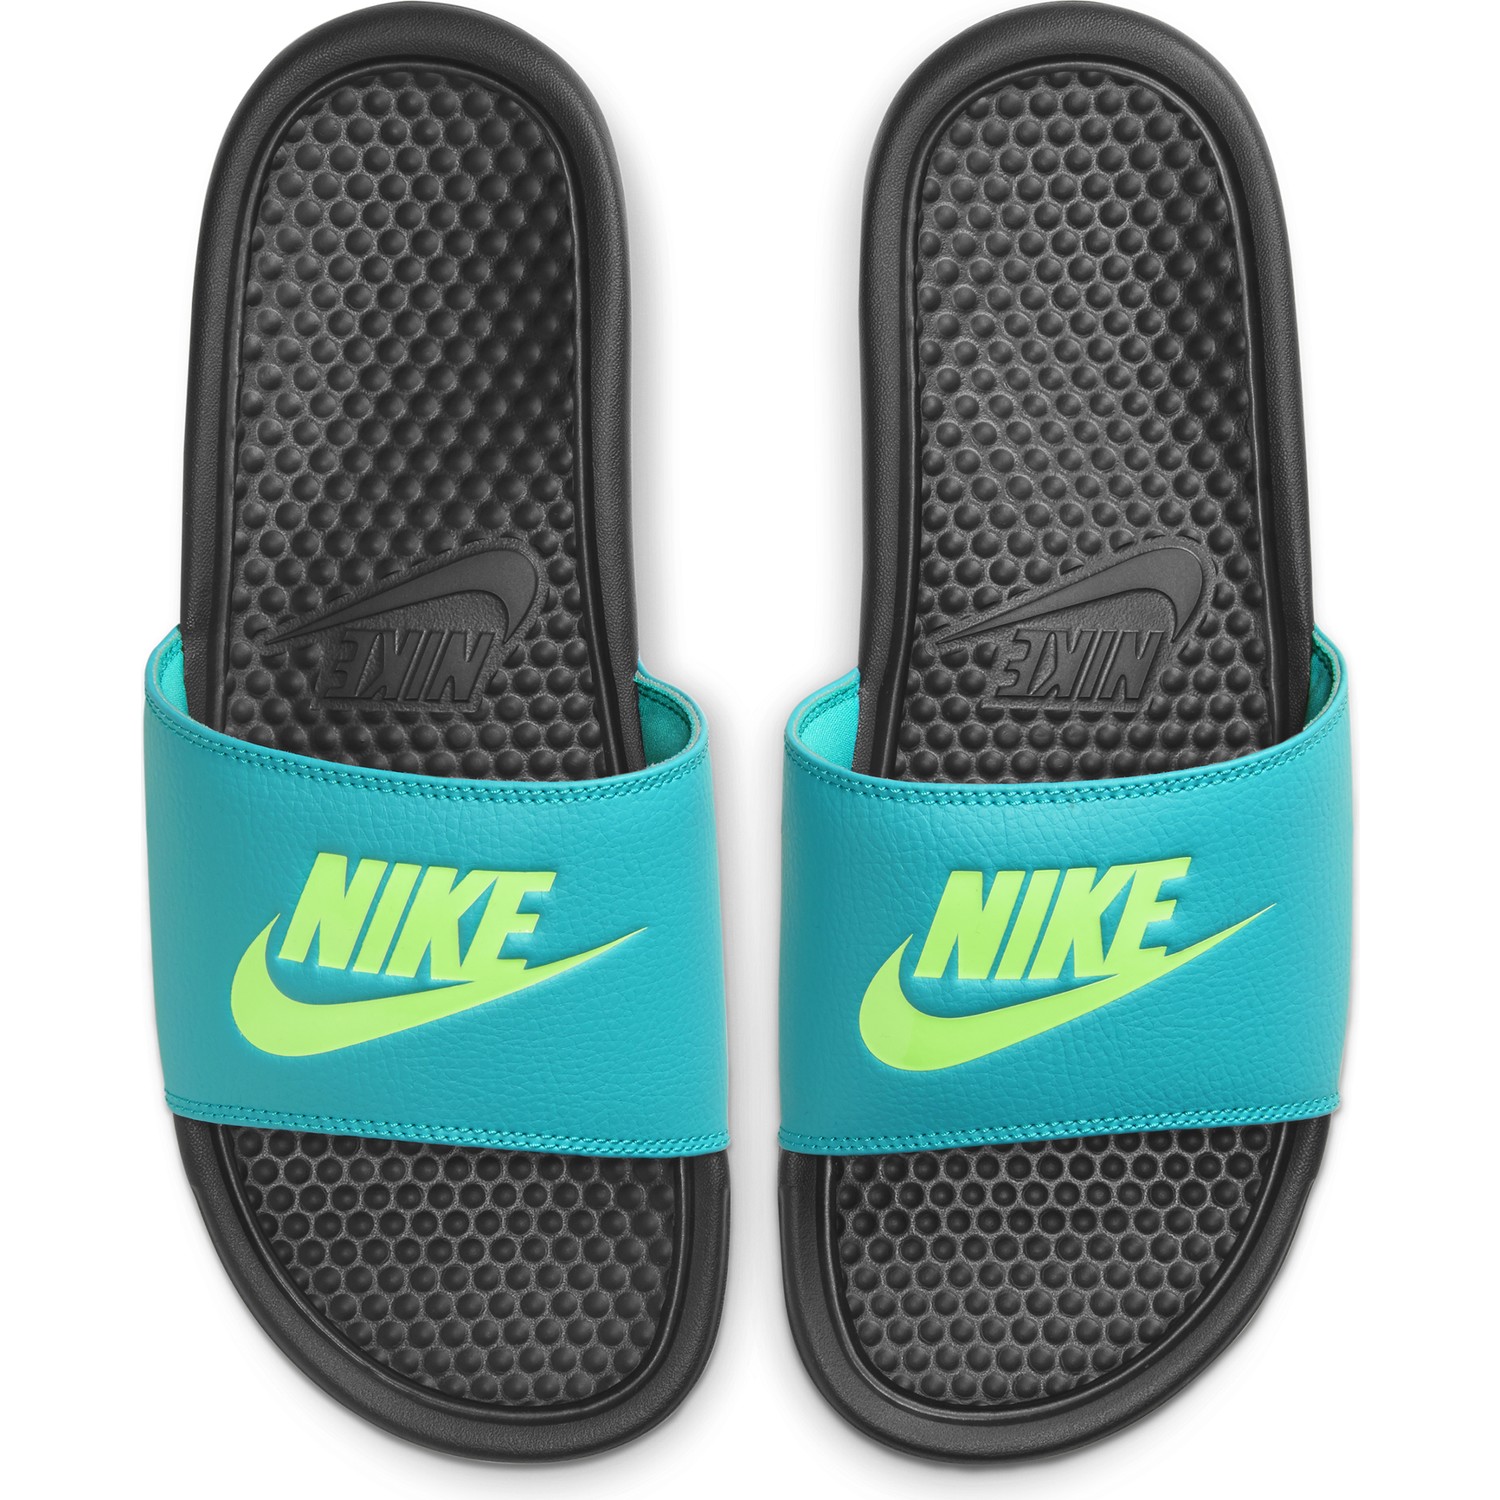 Sandales Nike Benassi bleu jaune sur Foot.fr